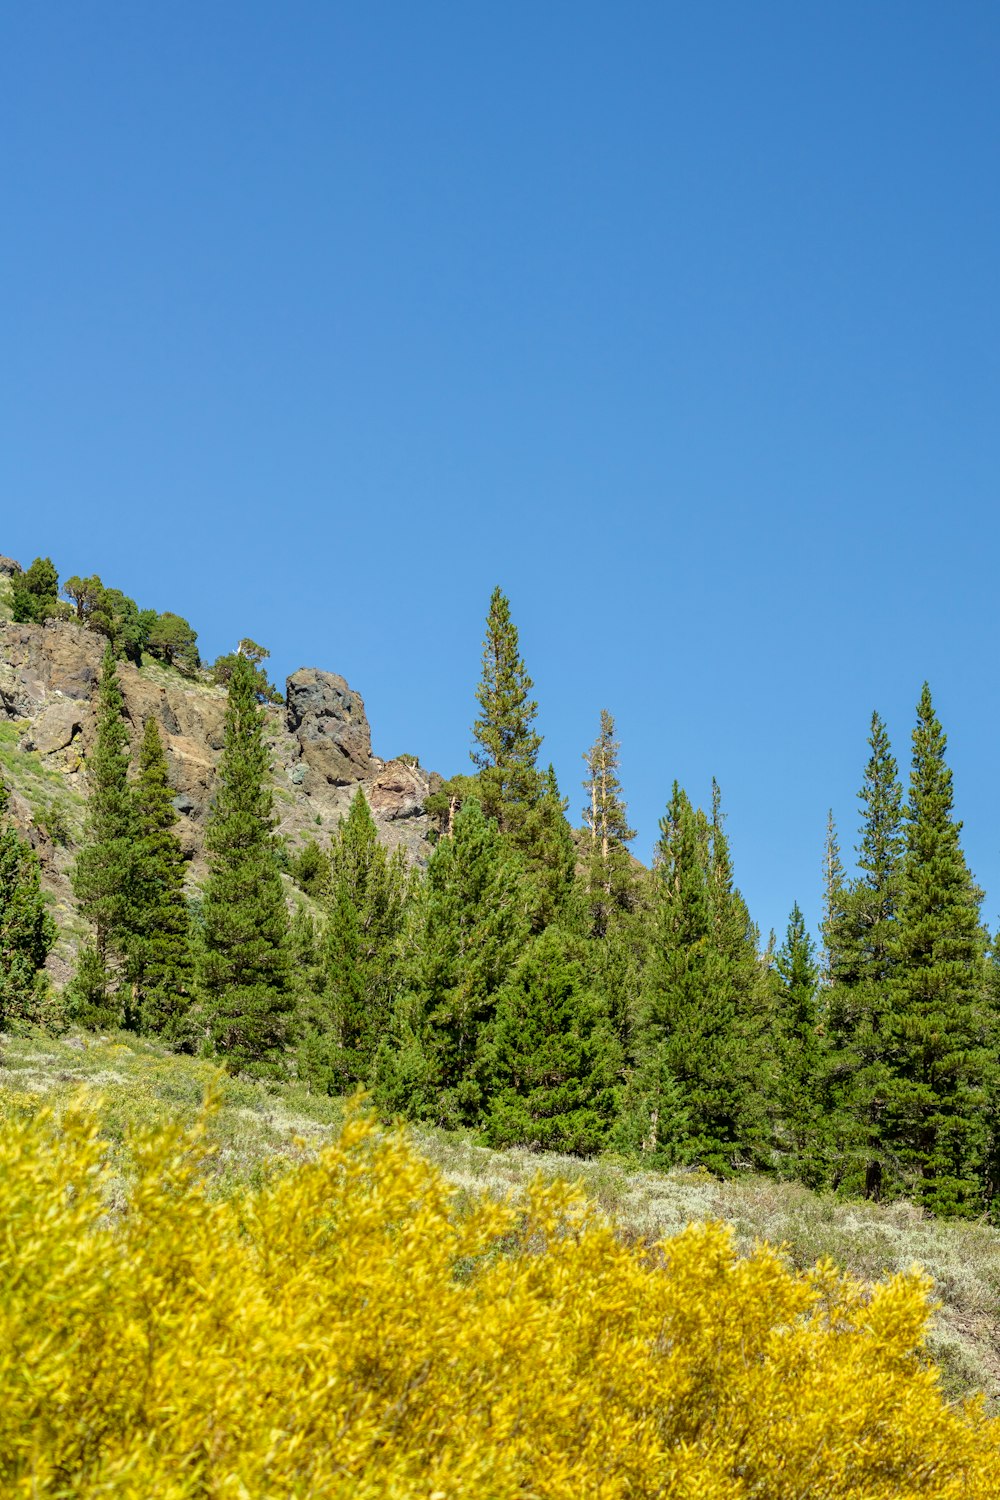 Un grupo de árboles y una montaña rocosa